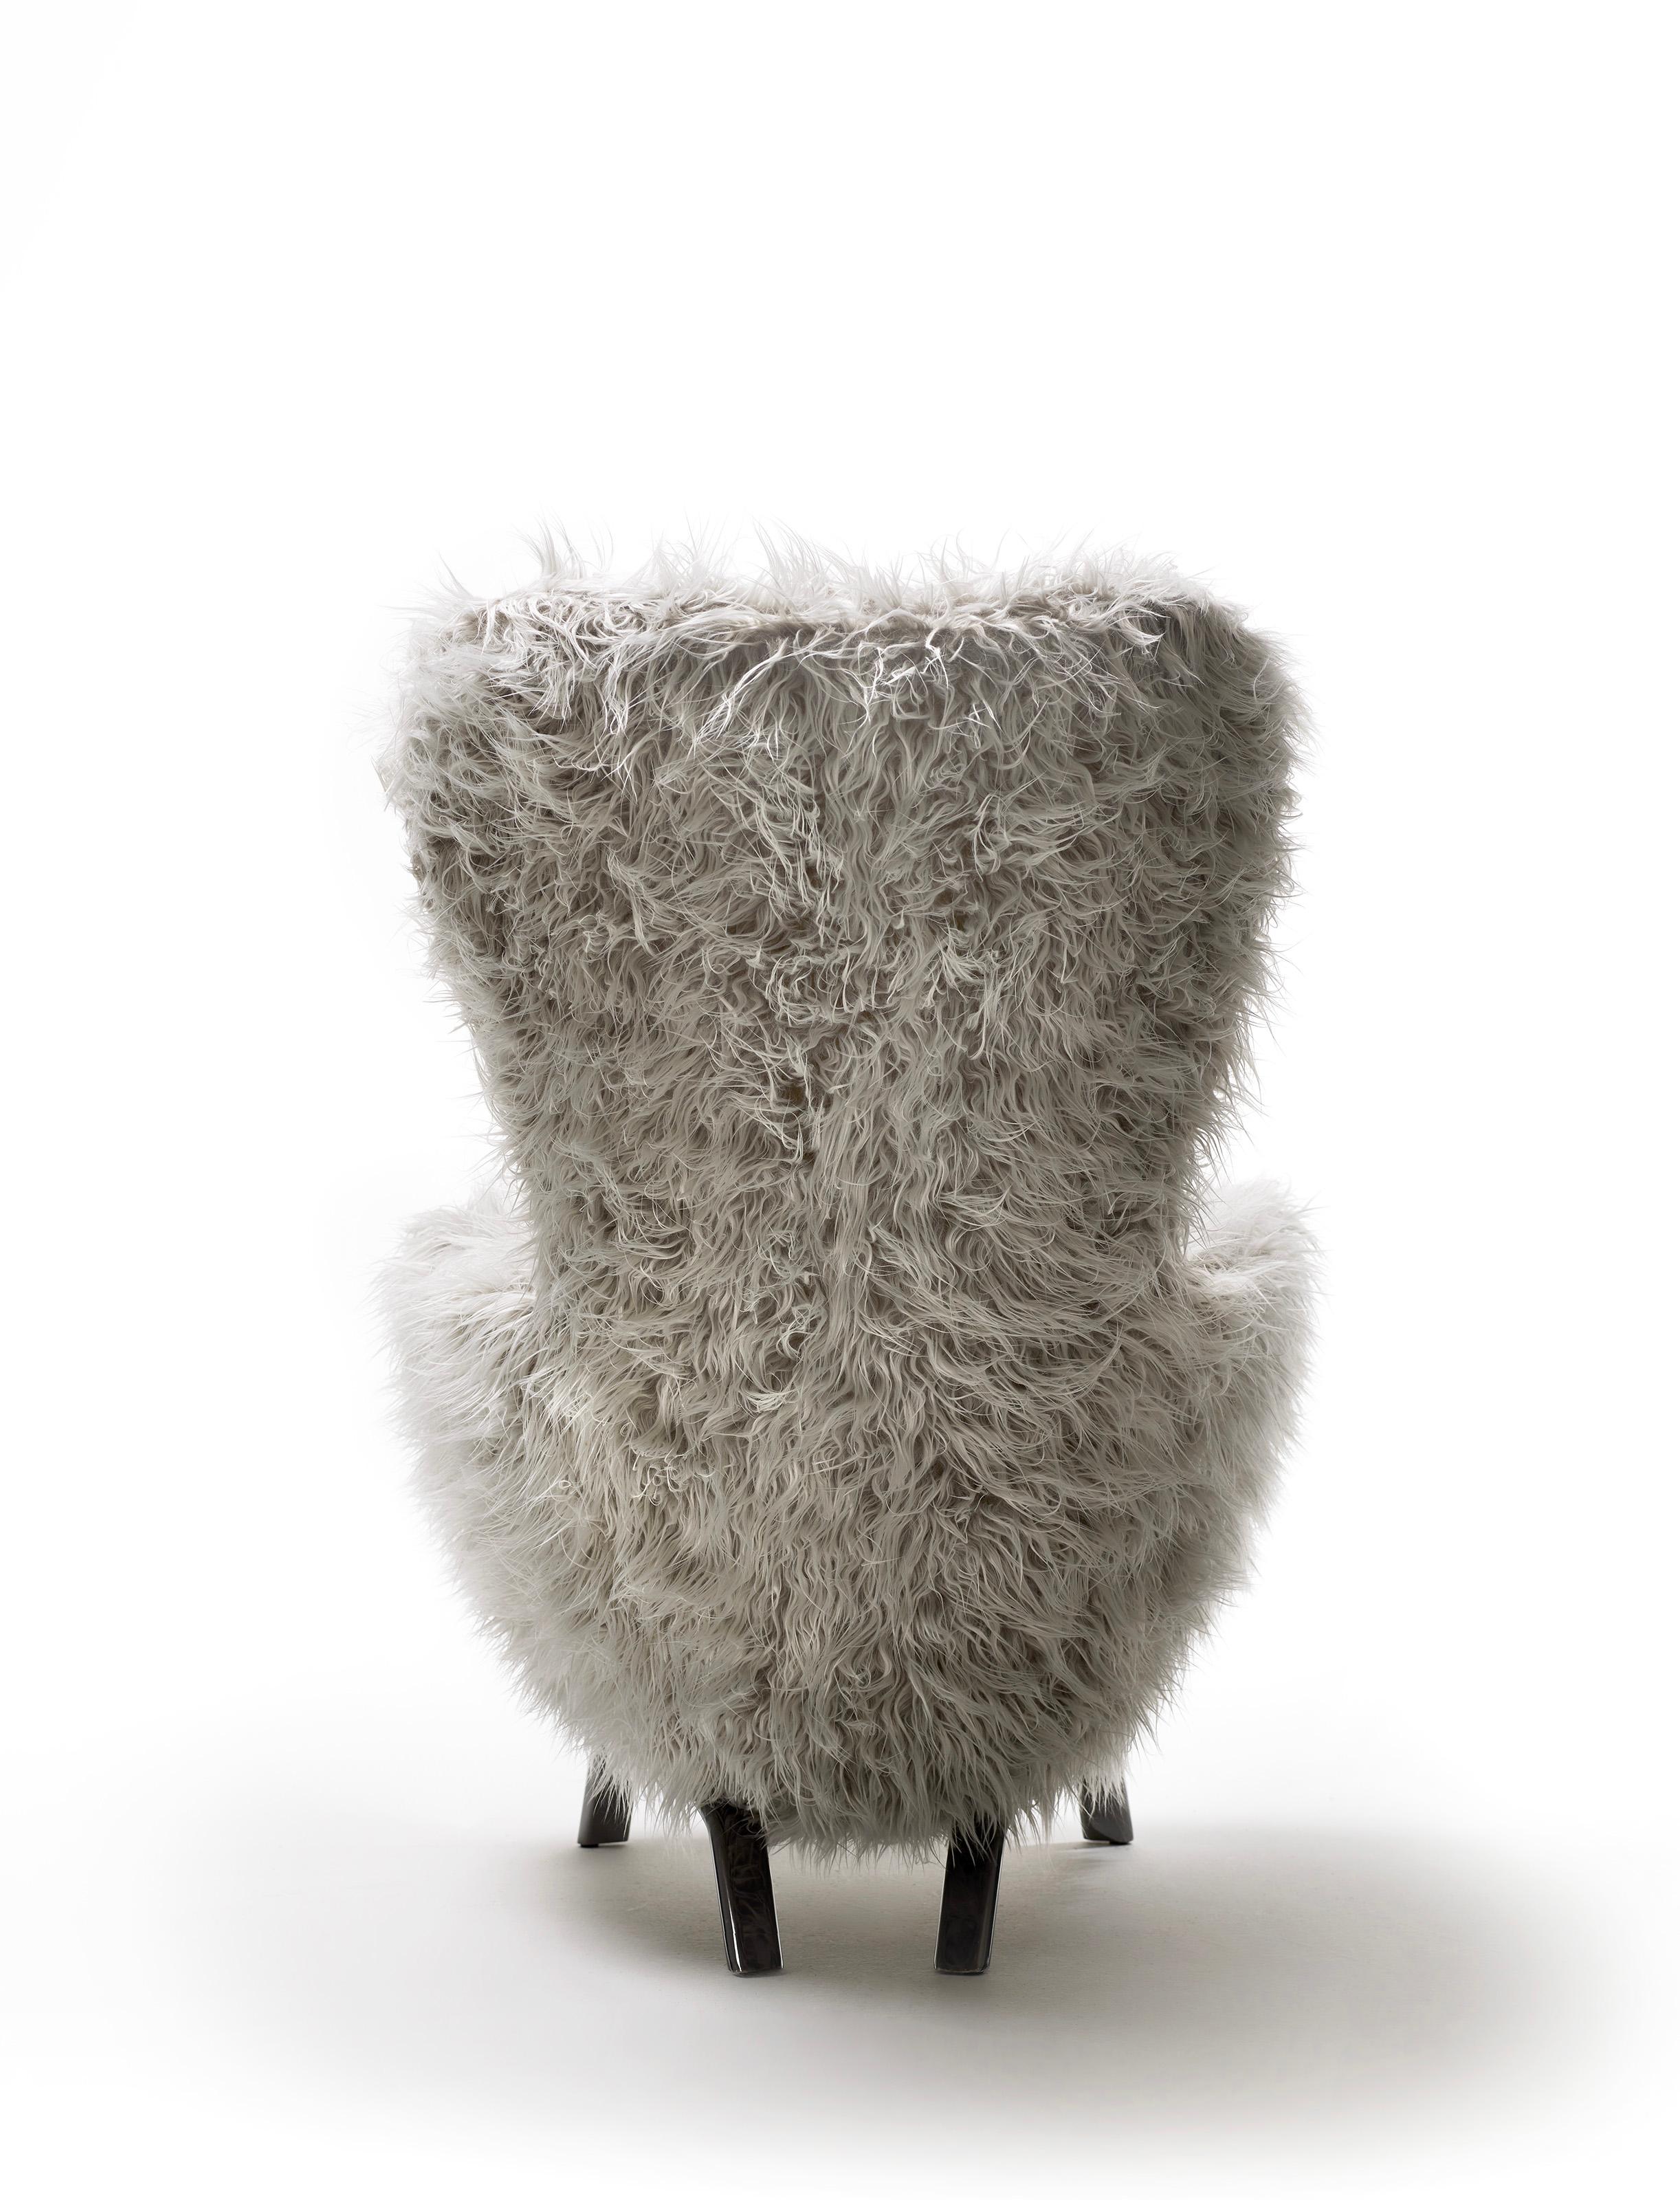 Ein gemütlicher und bequemer Schalensitz, eine beruhigende Form mit absolut zeitgemäßen Details: das sind die Hauptmerkmale der von Lapo Ciatti entworfenen Kollektion Guelfo.

Der Sessel und der Hocker Guelfo wurden 2015 mit dem Ziel